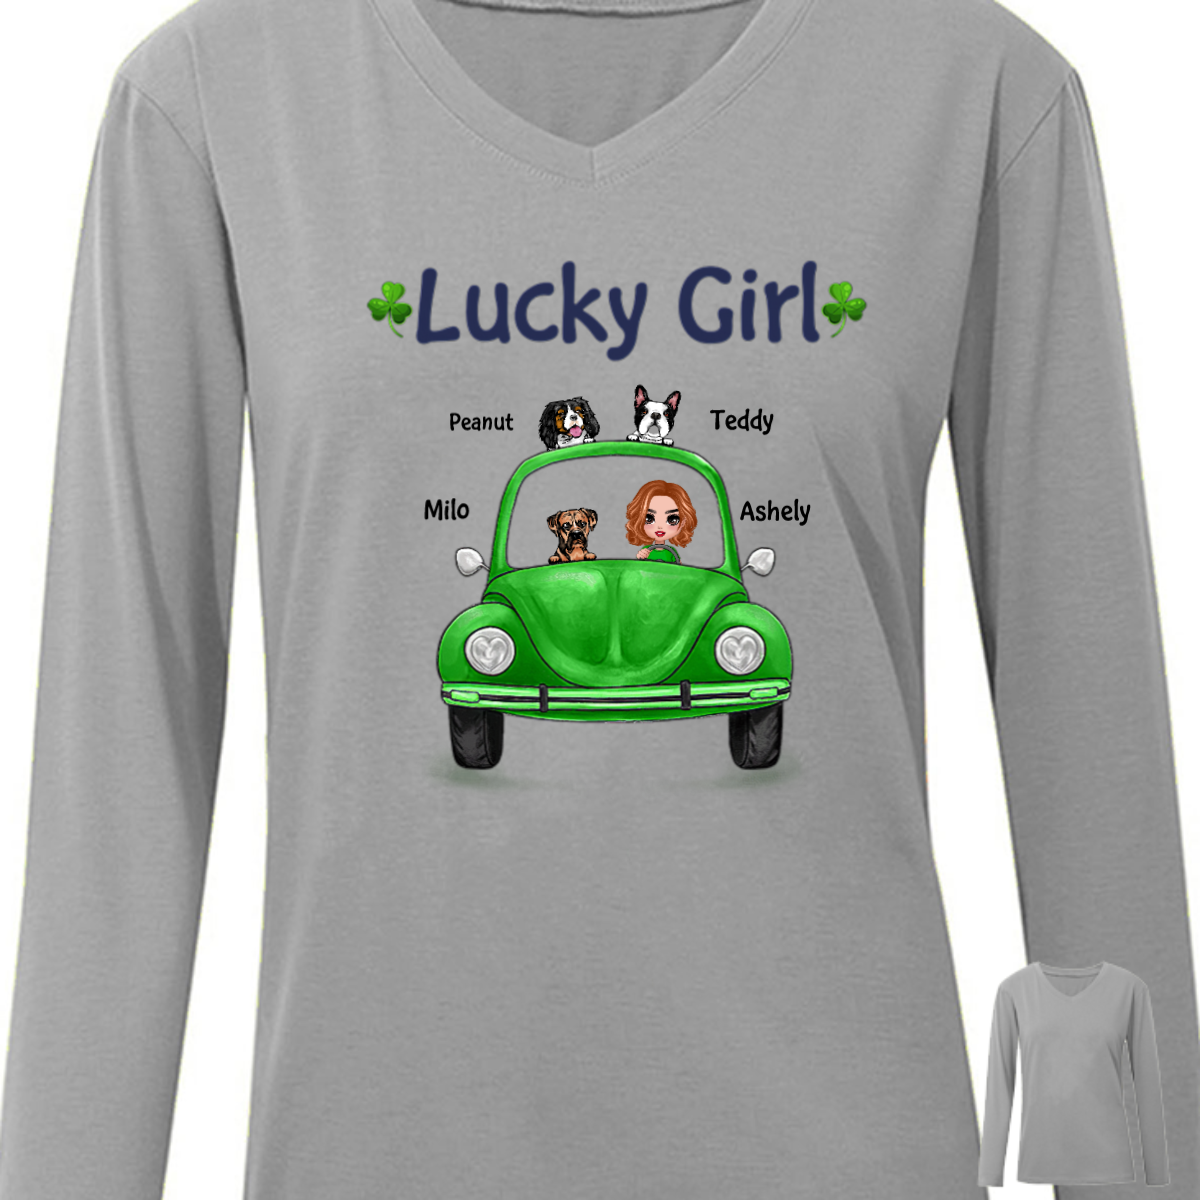 人形の女の子と犬の車のラッキーガール聖パトリックの日アイルランドのパーソナライズされた長袖シャツ